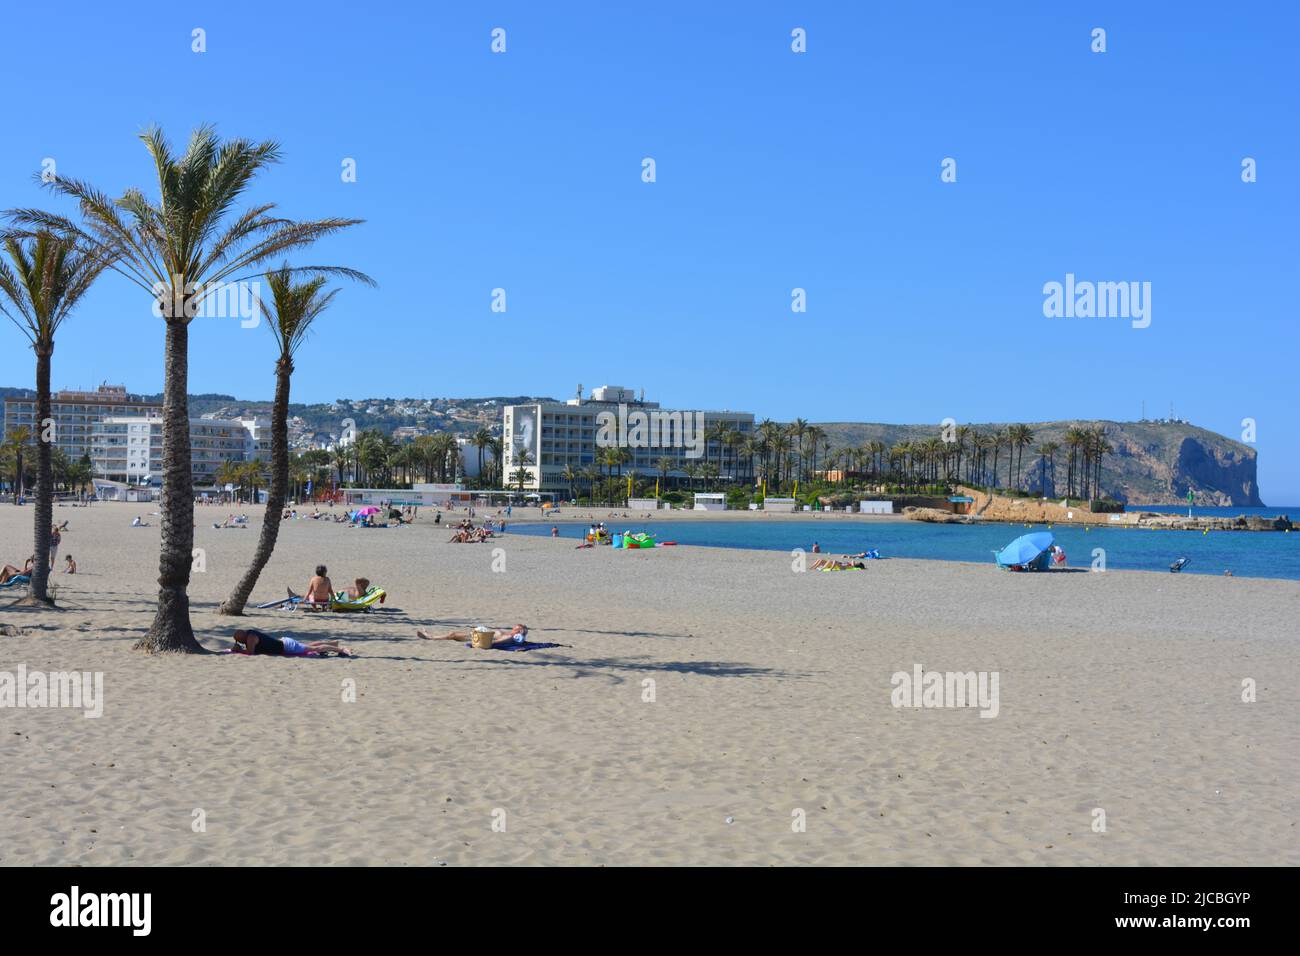 Touristes sur la plage Arenal avec Parador et Cabo San Antonio derrière, Javea, Alicante, Espagne Banque D'Images